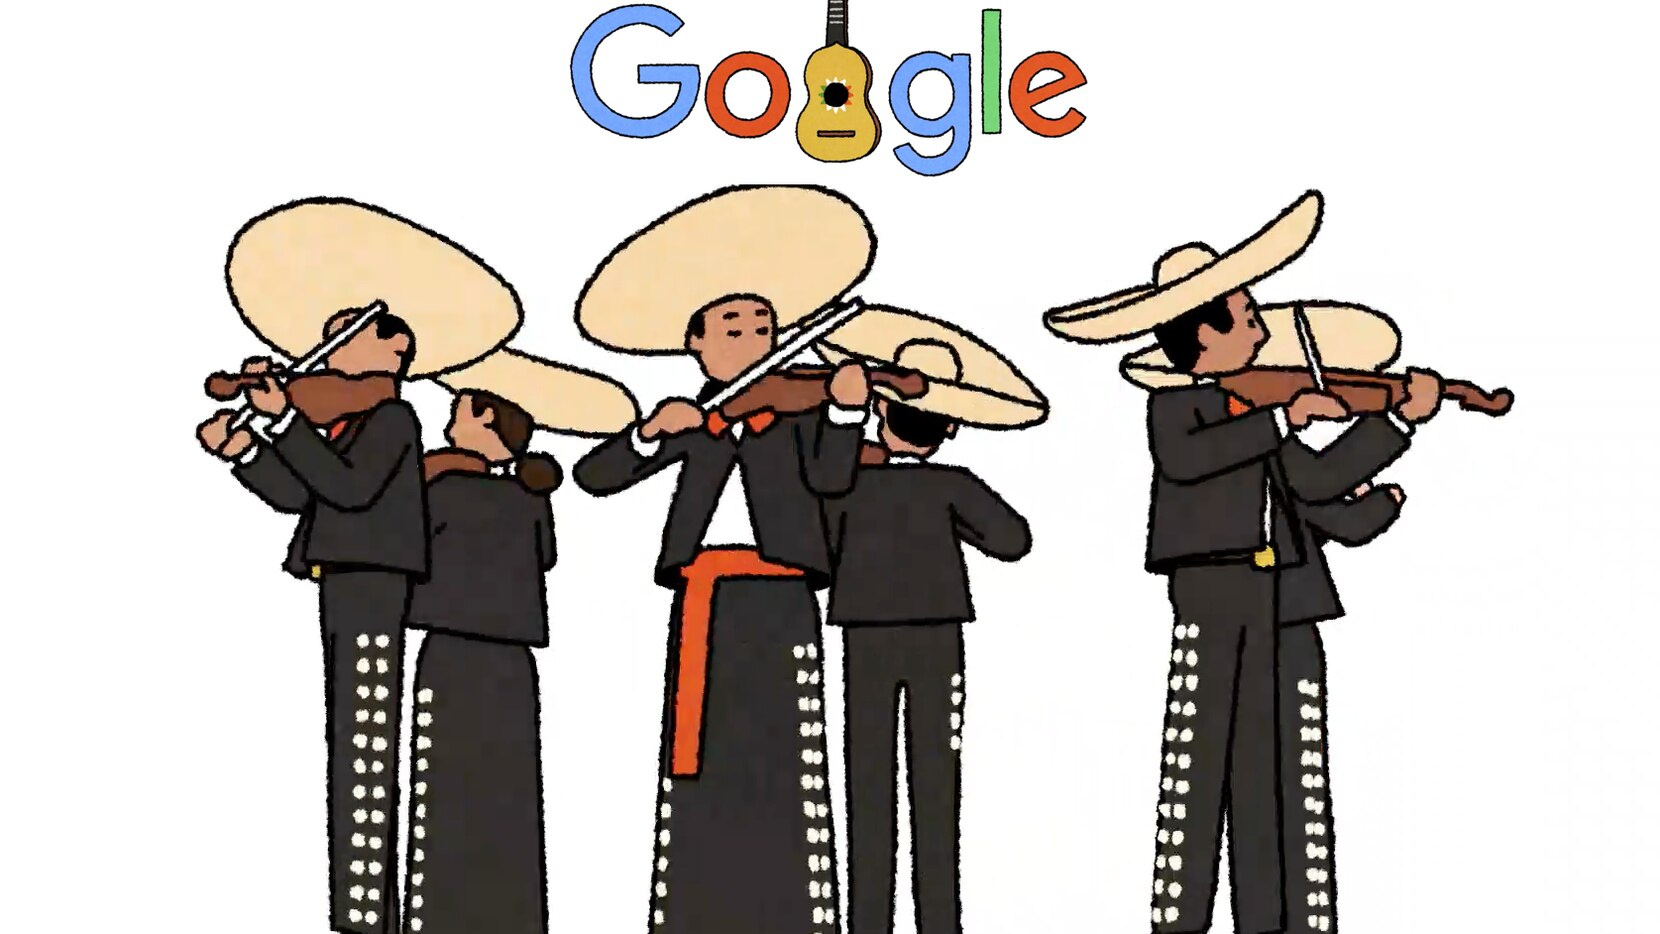 Google celebra con Mariachi y al son de “Cielito Lindo”